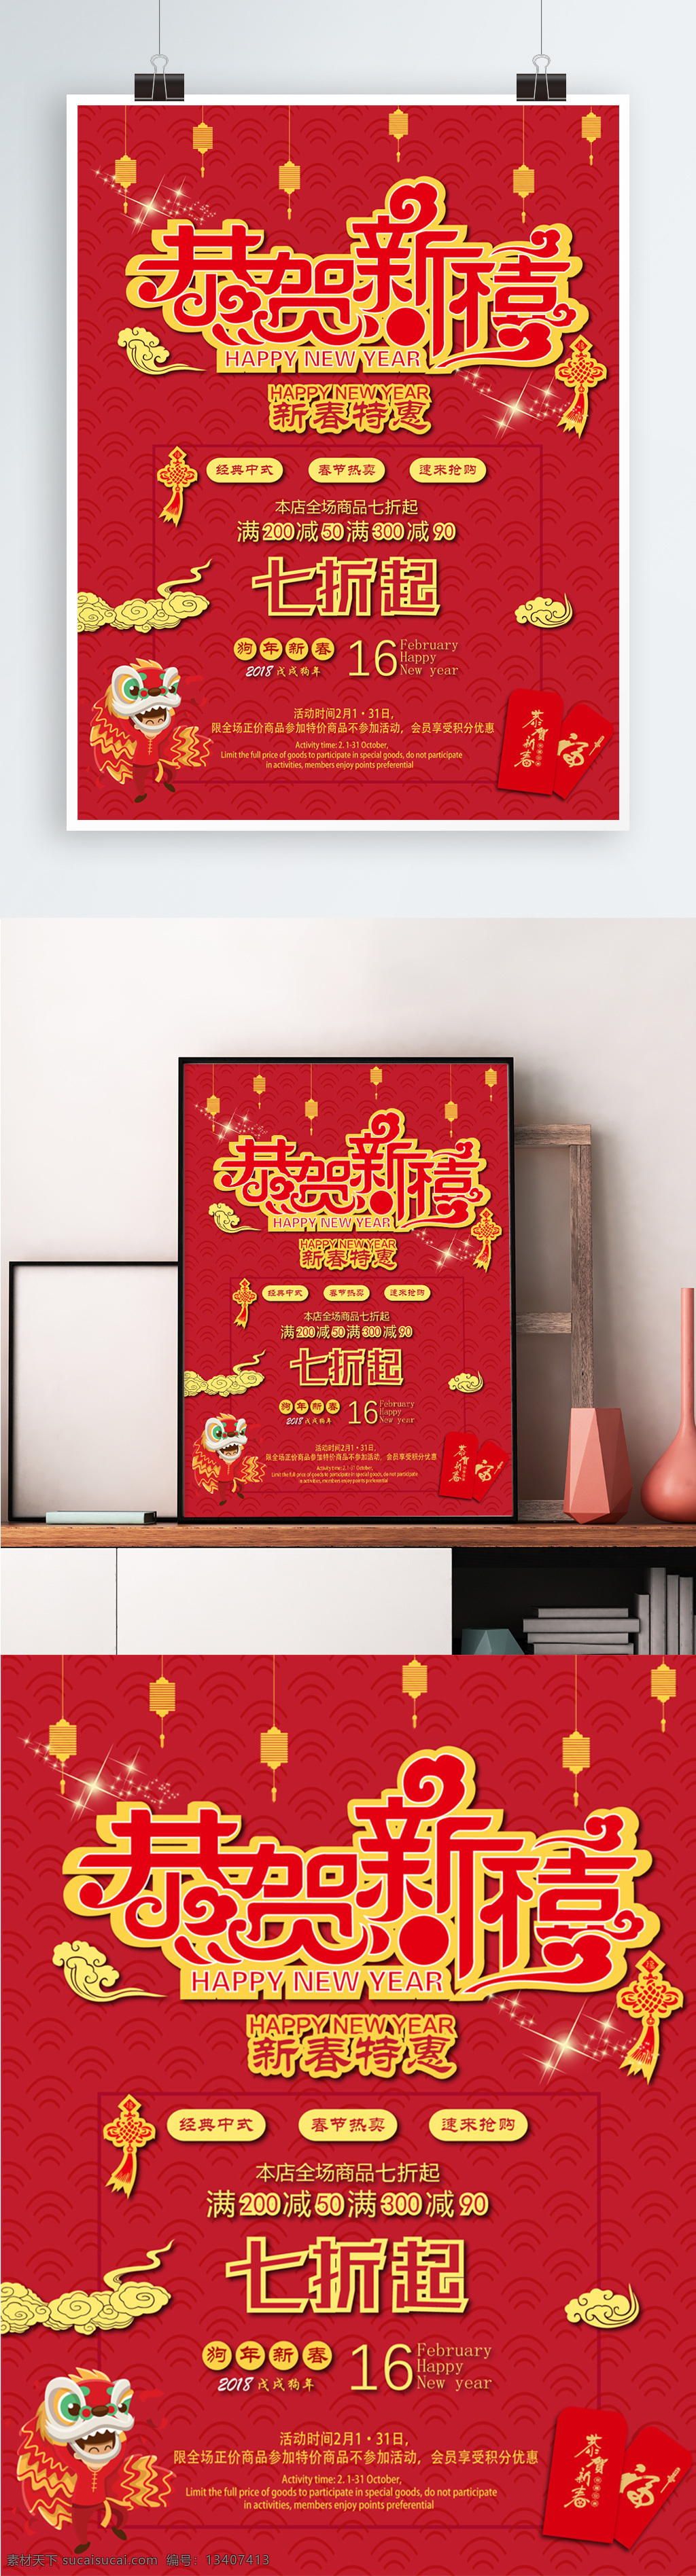 新春 新年 简约 喜庆 中国 风 红色 背景 促销 海报 底纹 黄色 红色背景 中国风